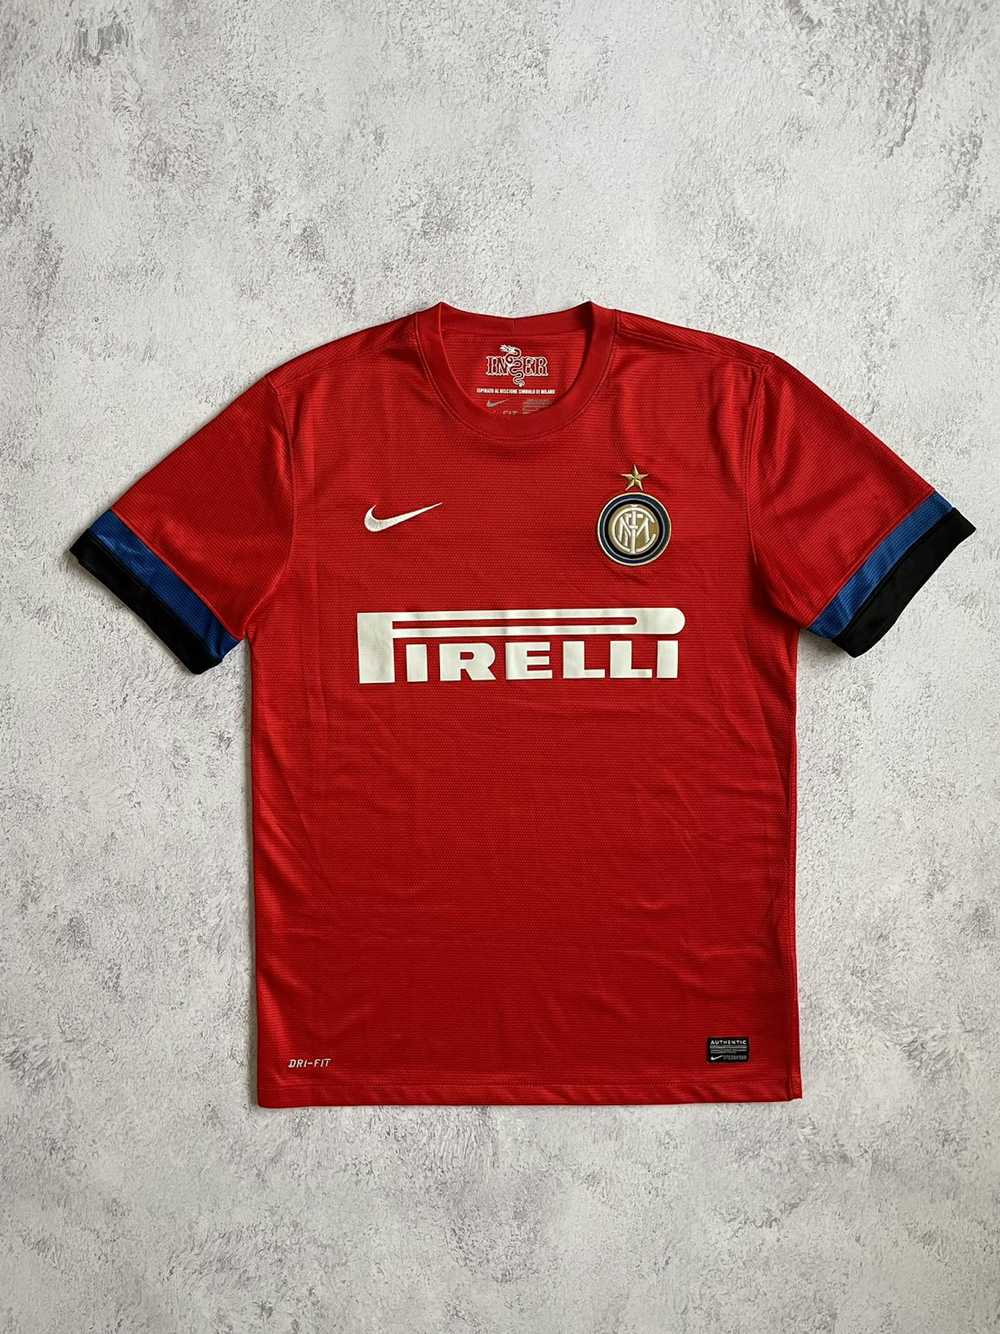 Nike × Soccer Jersey × Very Rare Nike Inter Milan… - image 1